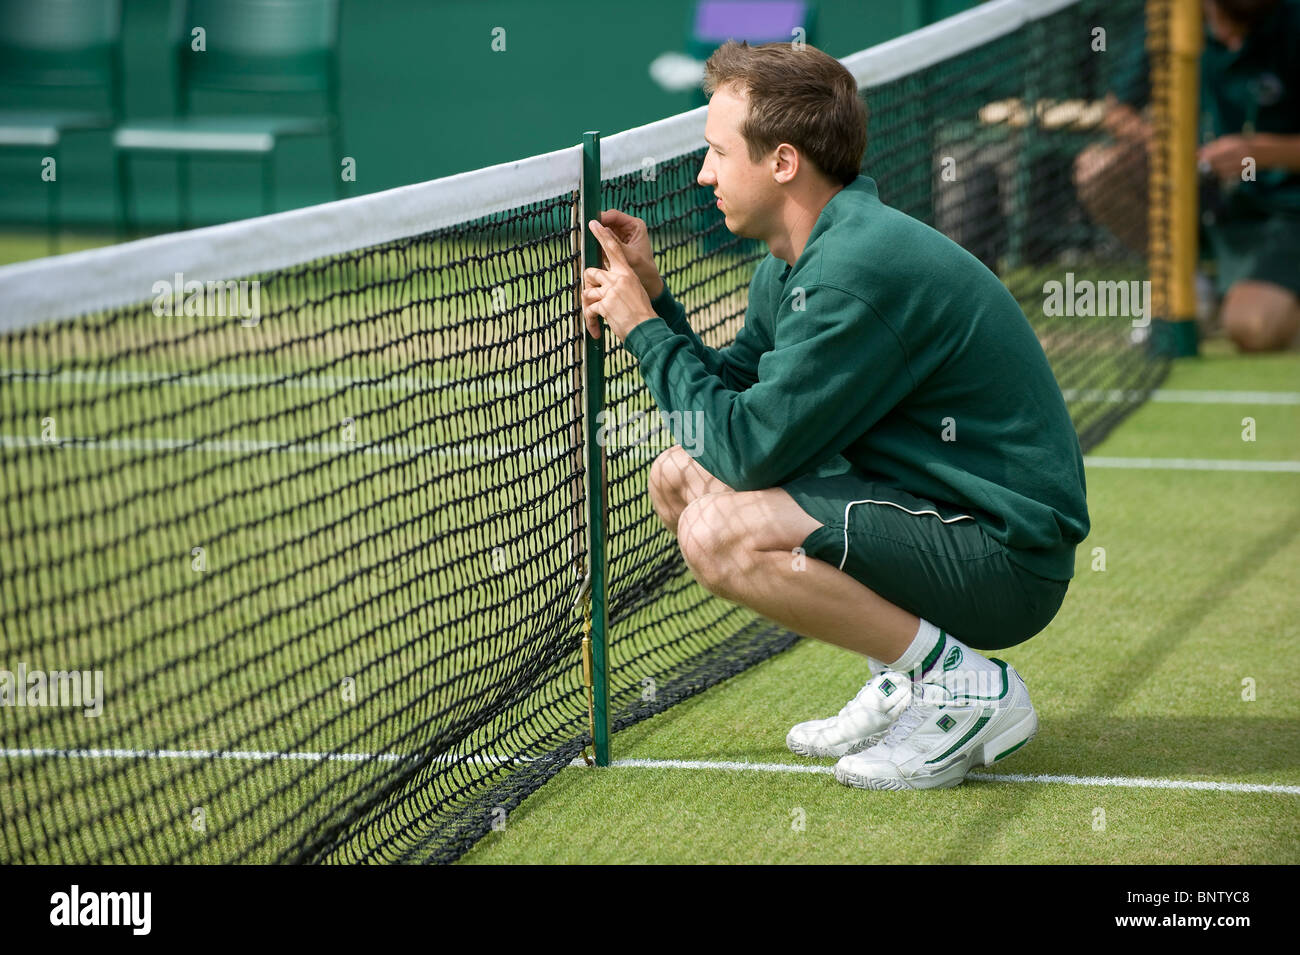 Le personnel au sol mis en place le net au cours de la Tennis de Wimbledon 2010 Banque D'Images